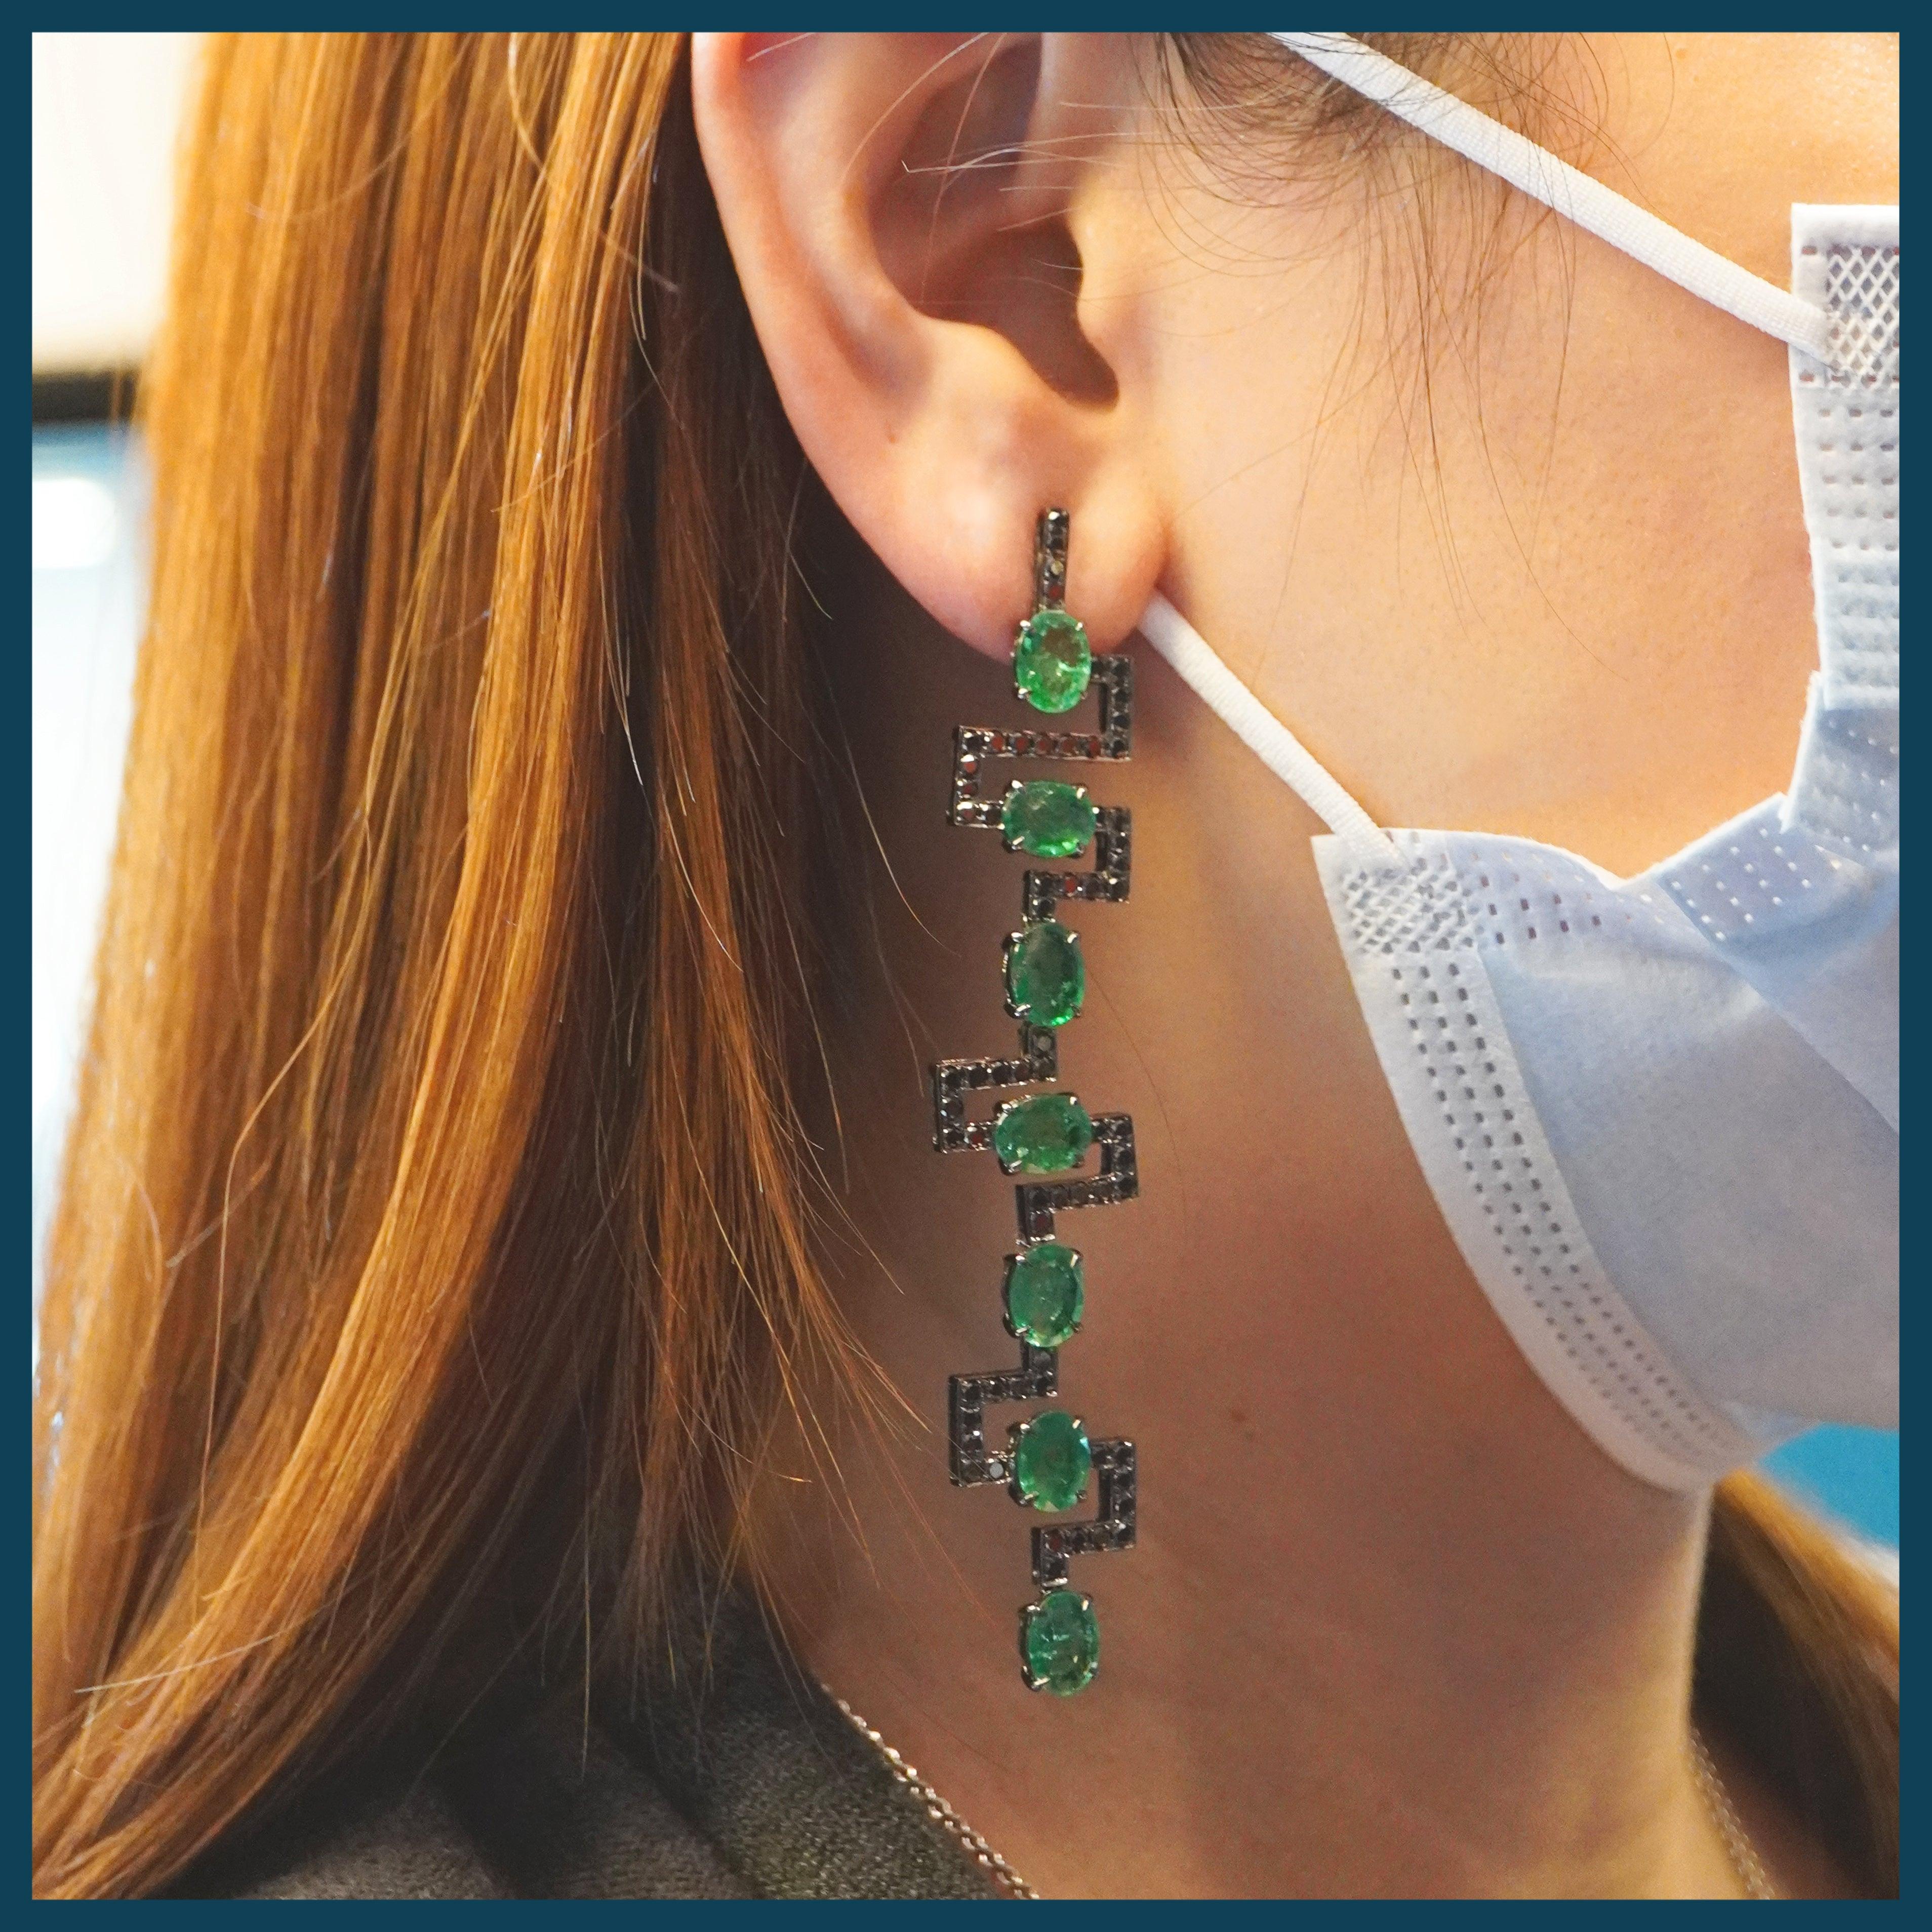 14.56 Karat kolumbianische Smaragde sind zusammen mit 2,49 Karat schwarzen Diamanten gefasst. Die Kombination aus Grün und Schwarz ist in diesem Zickzack-Ohrring wunderschön umgesetzt.
